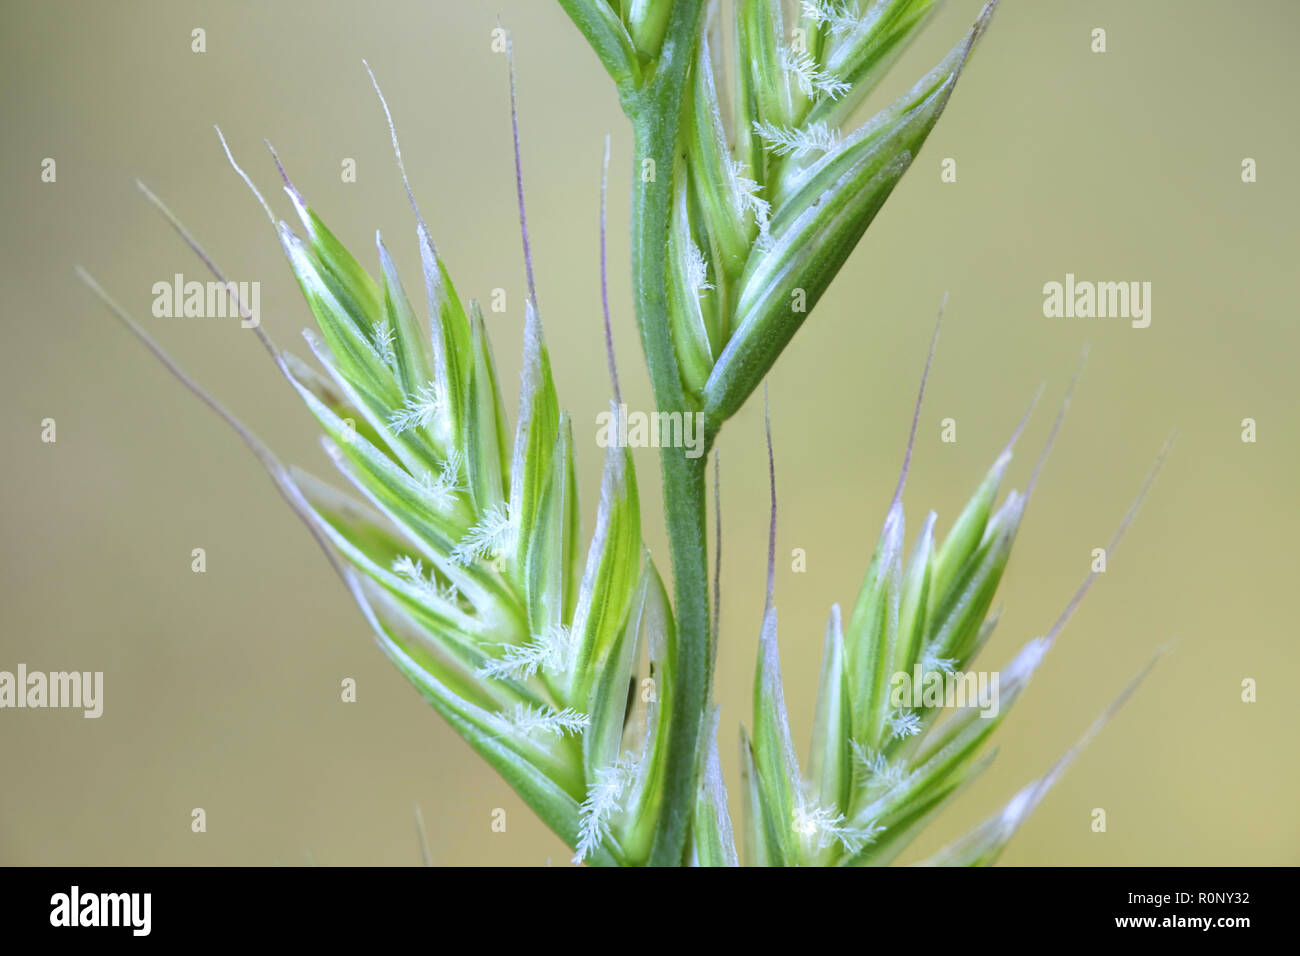 Italian rye-grass or ryegrass, Lolium multiflorum Stock Photo